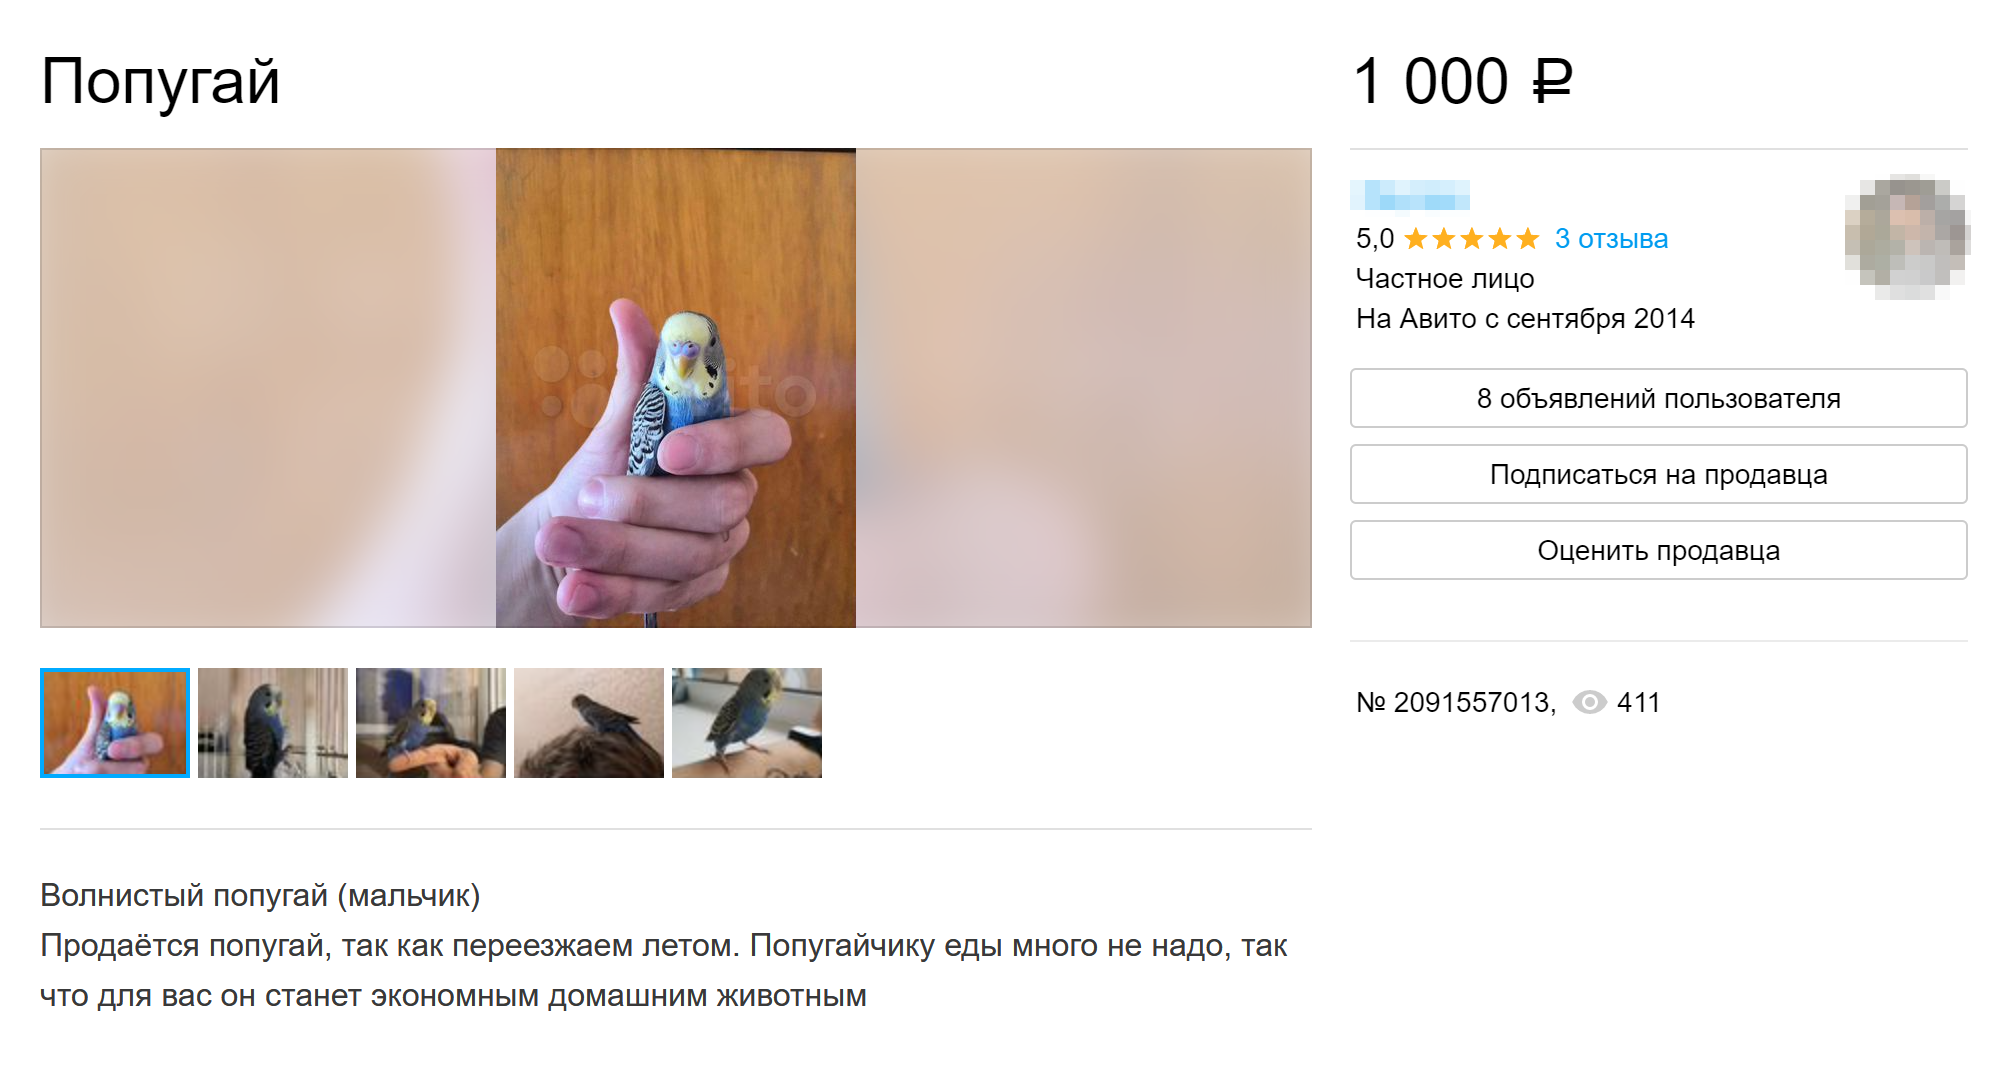 В некоторых объявлениях продавцы сразу объясняют причину продажи птичек. Источник: avito.ru